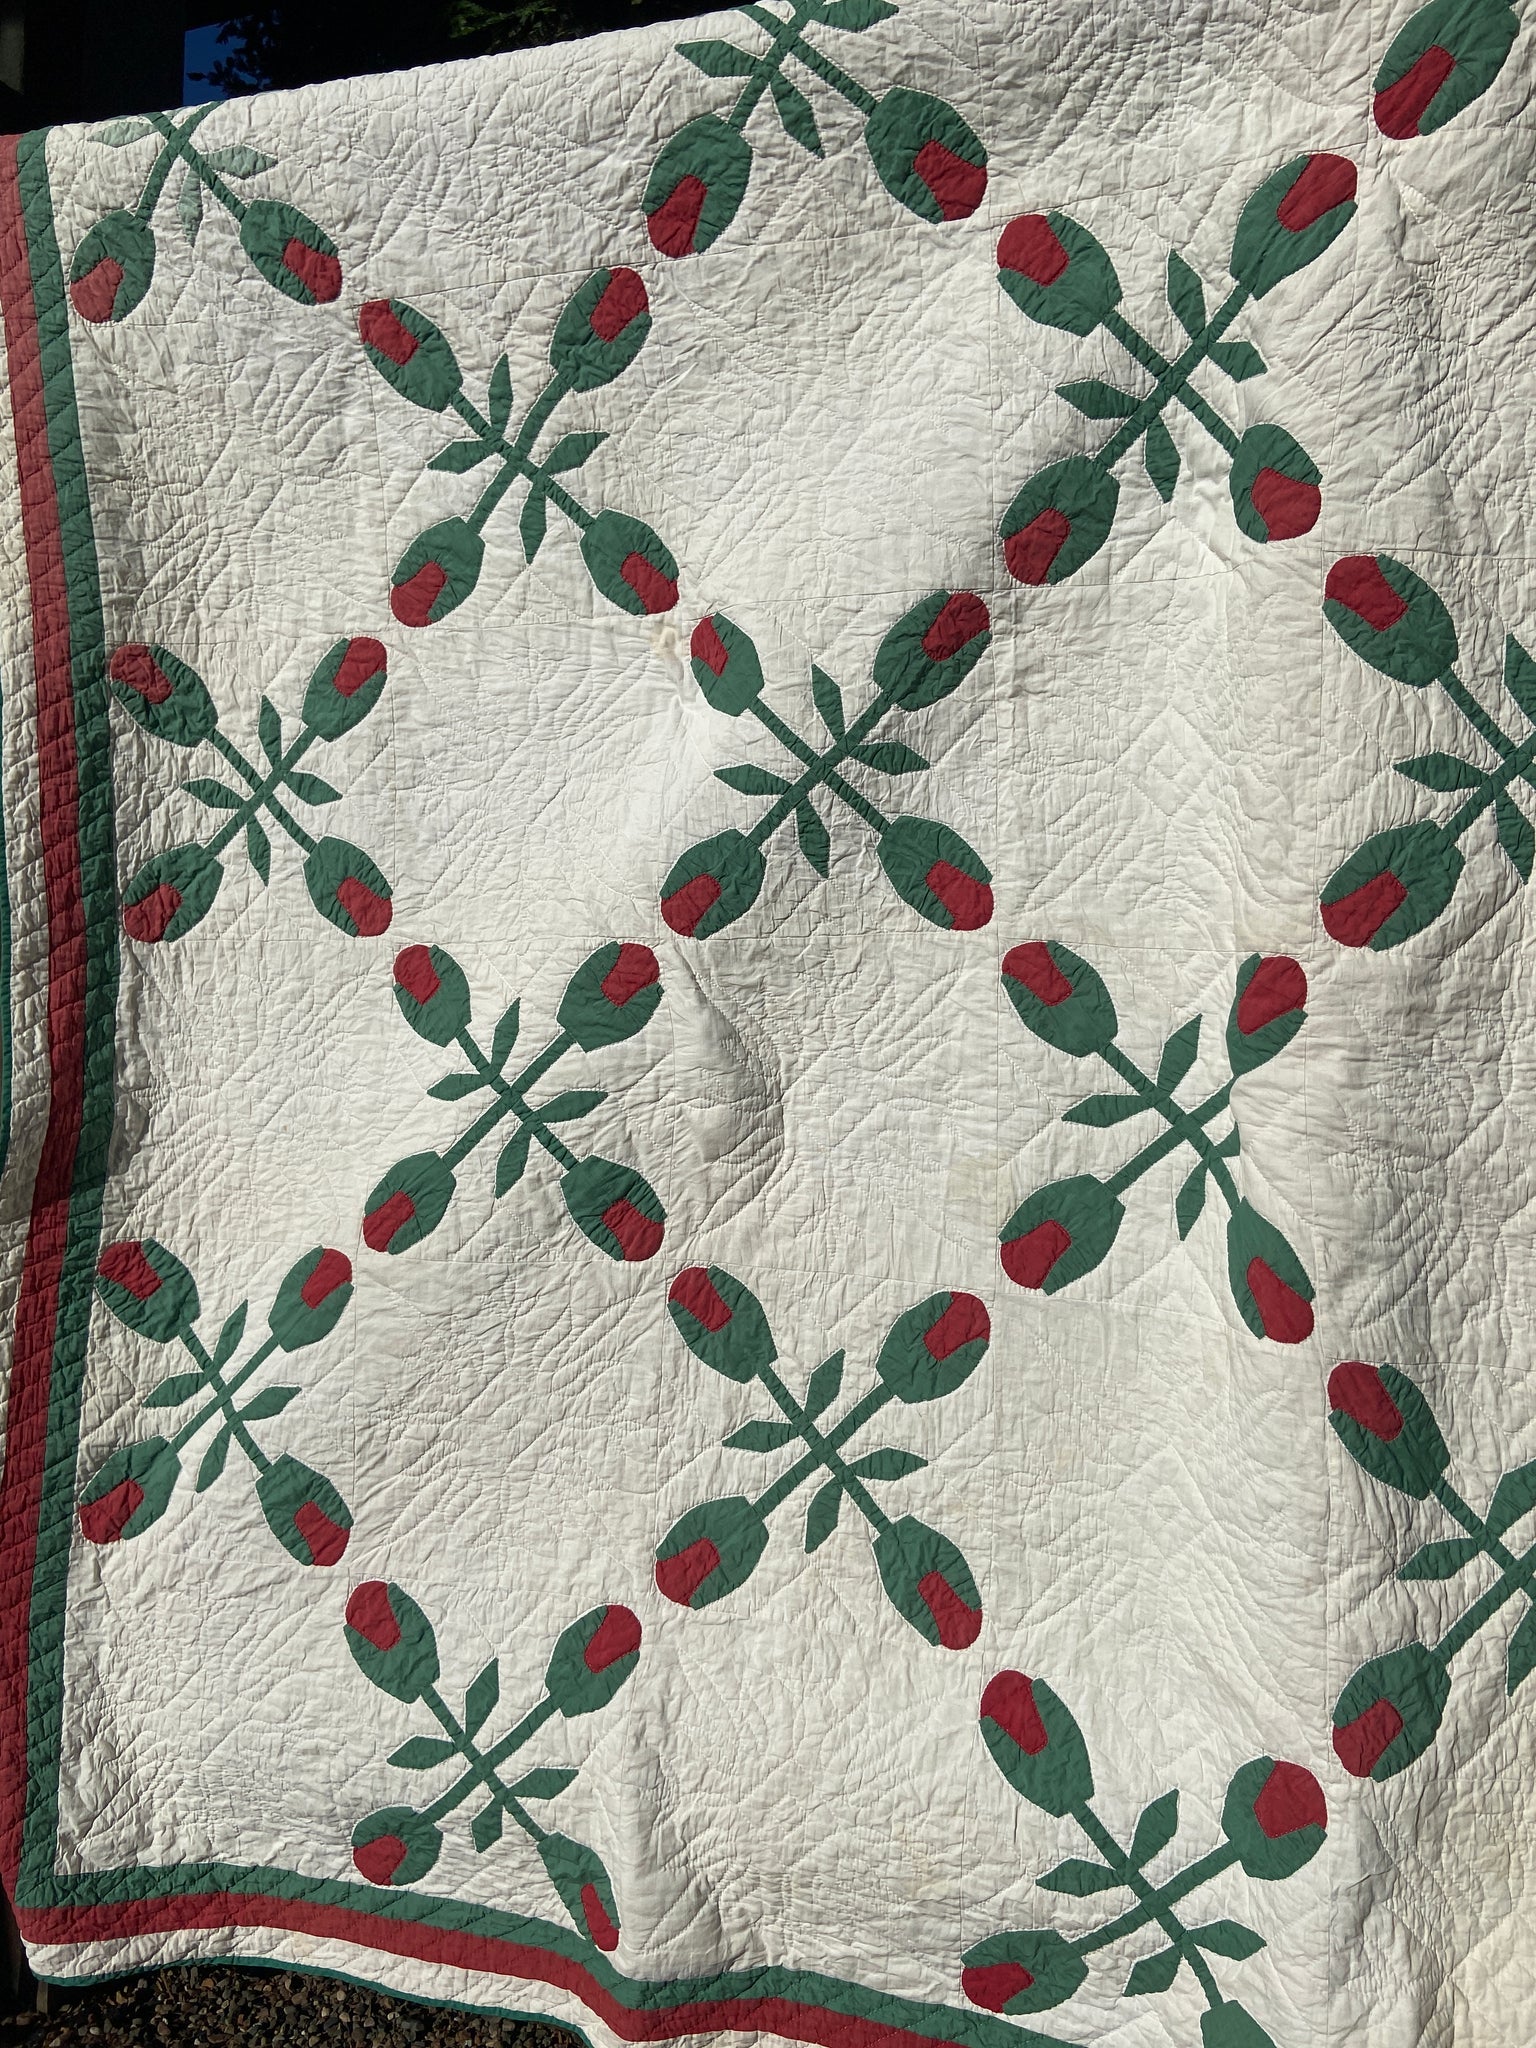 Antique Mid- Late 1800s Applique Quilt